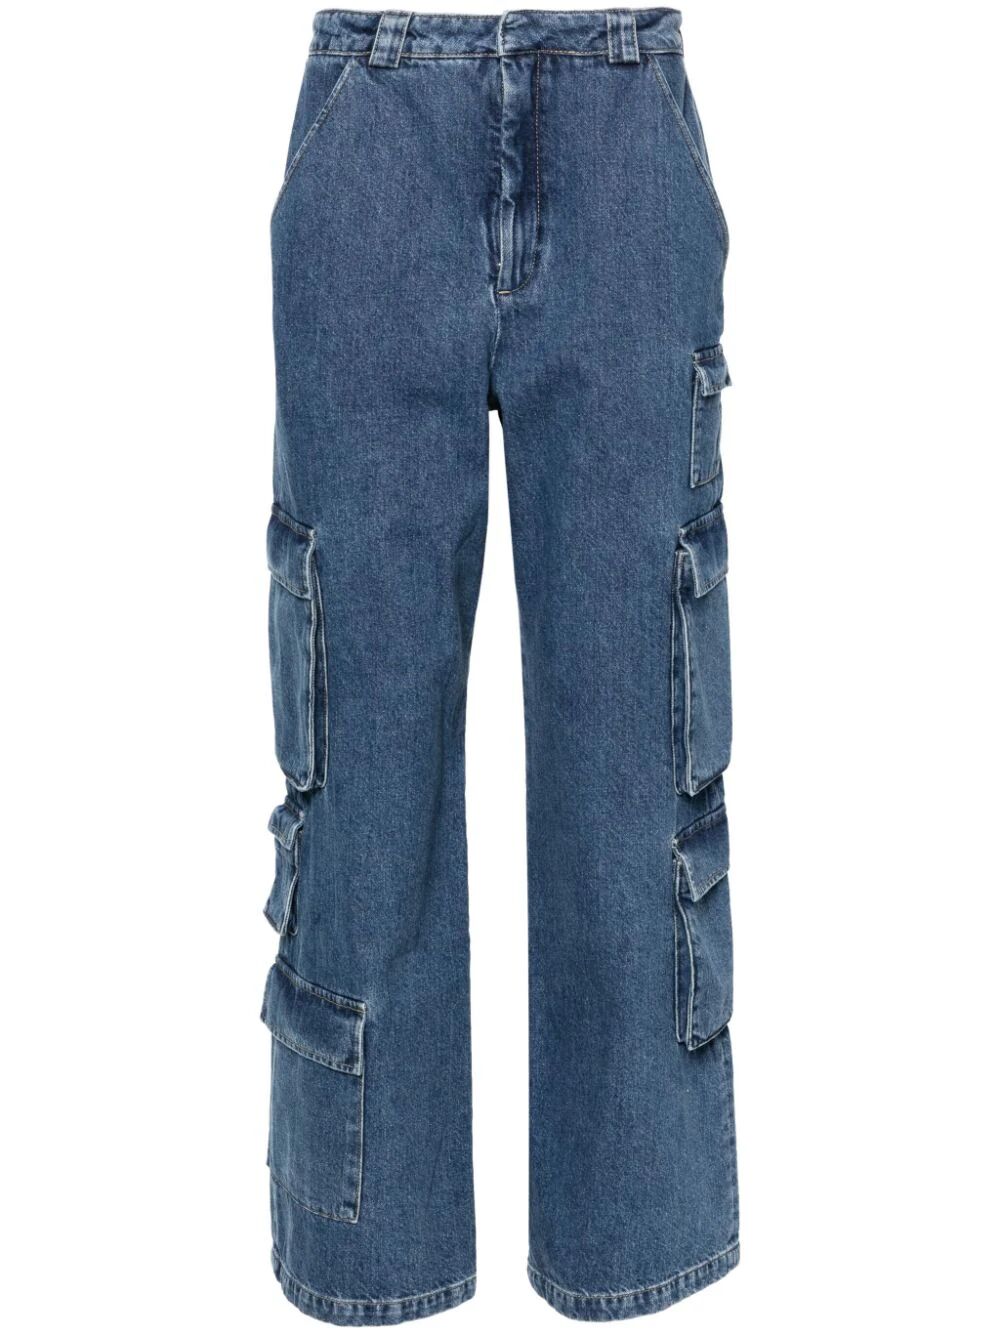 Roam wide-leg cargo jeans